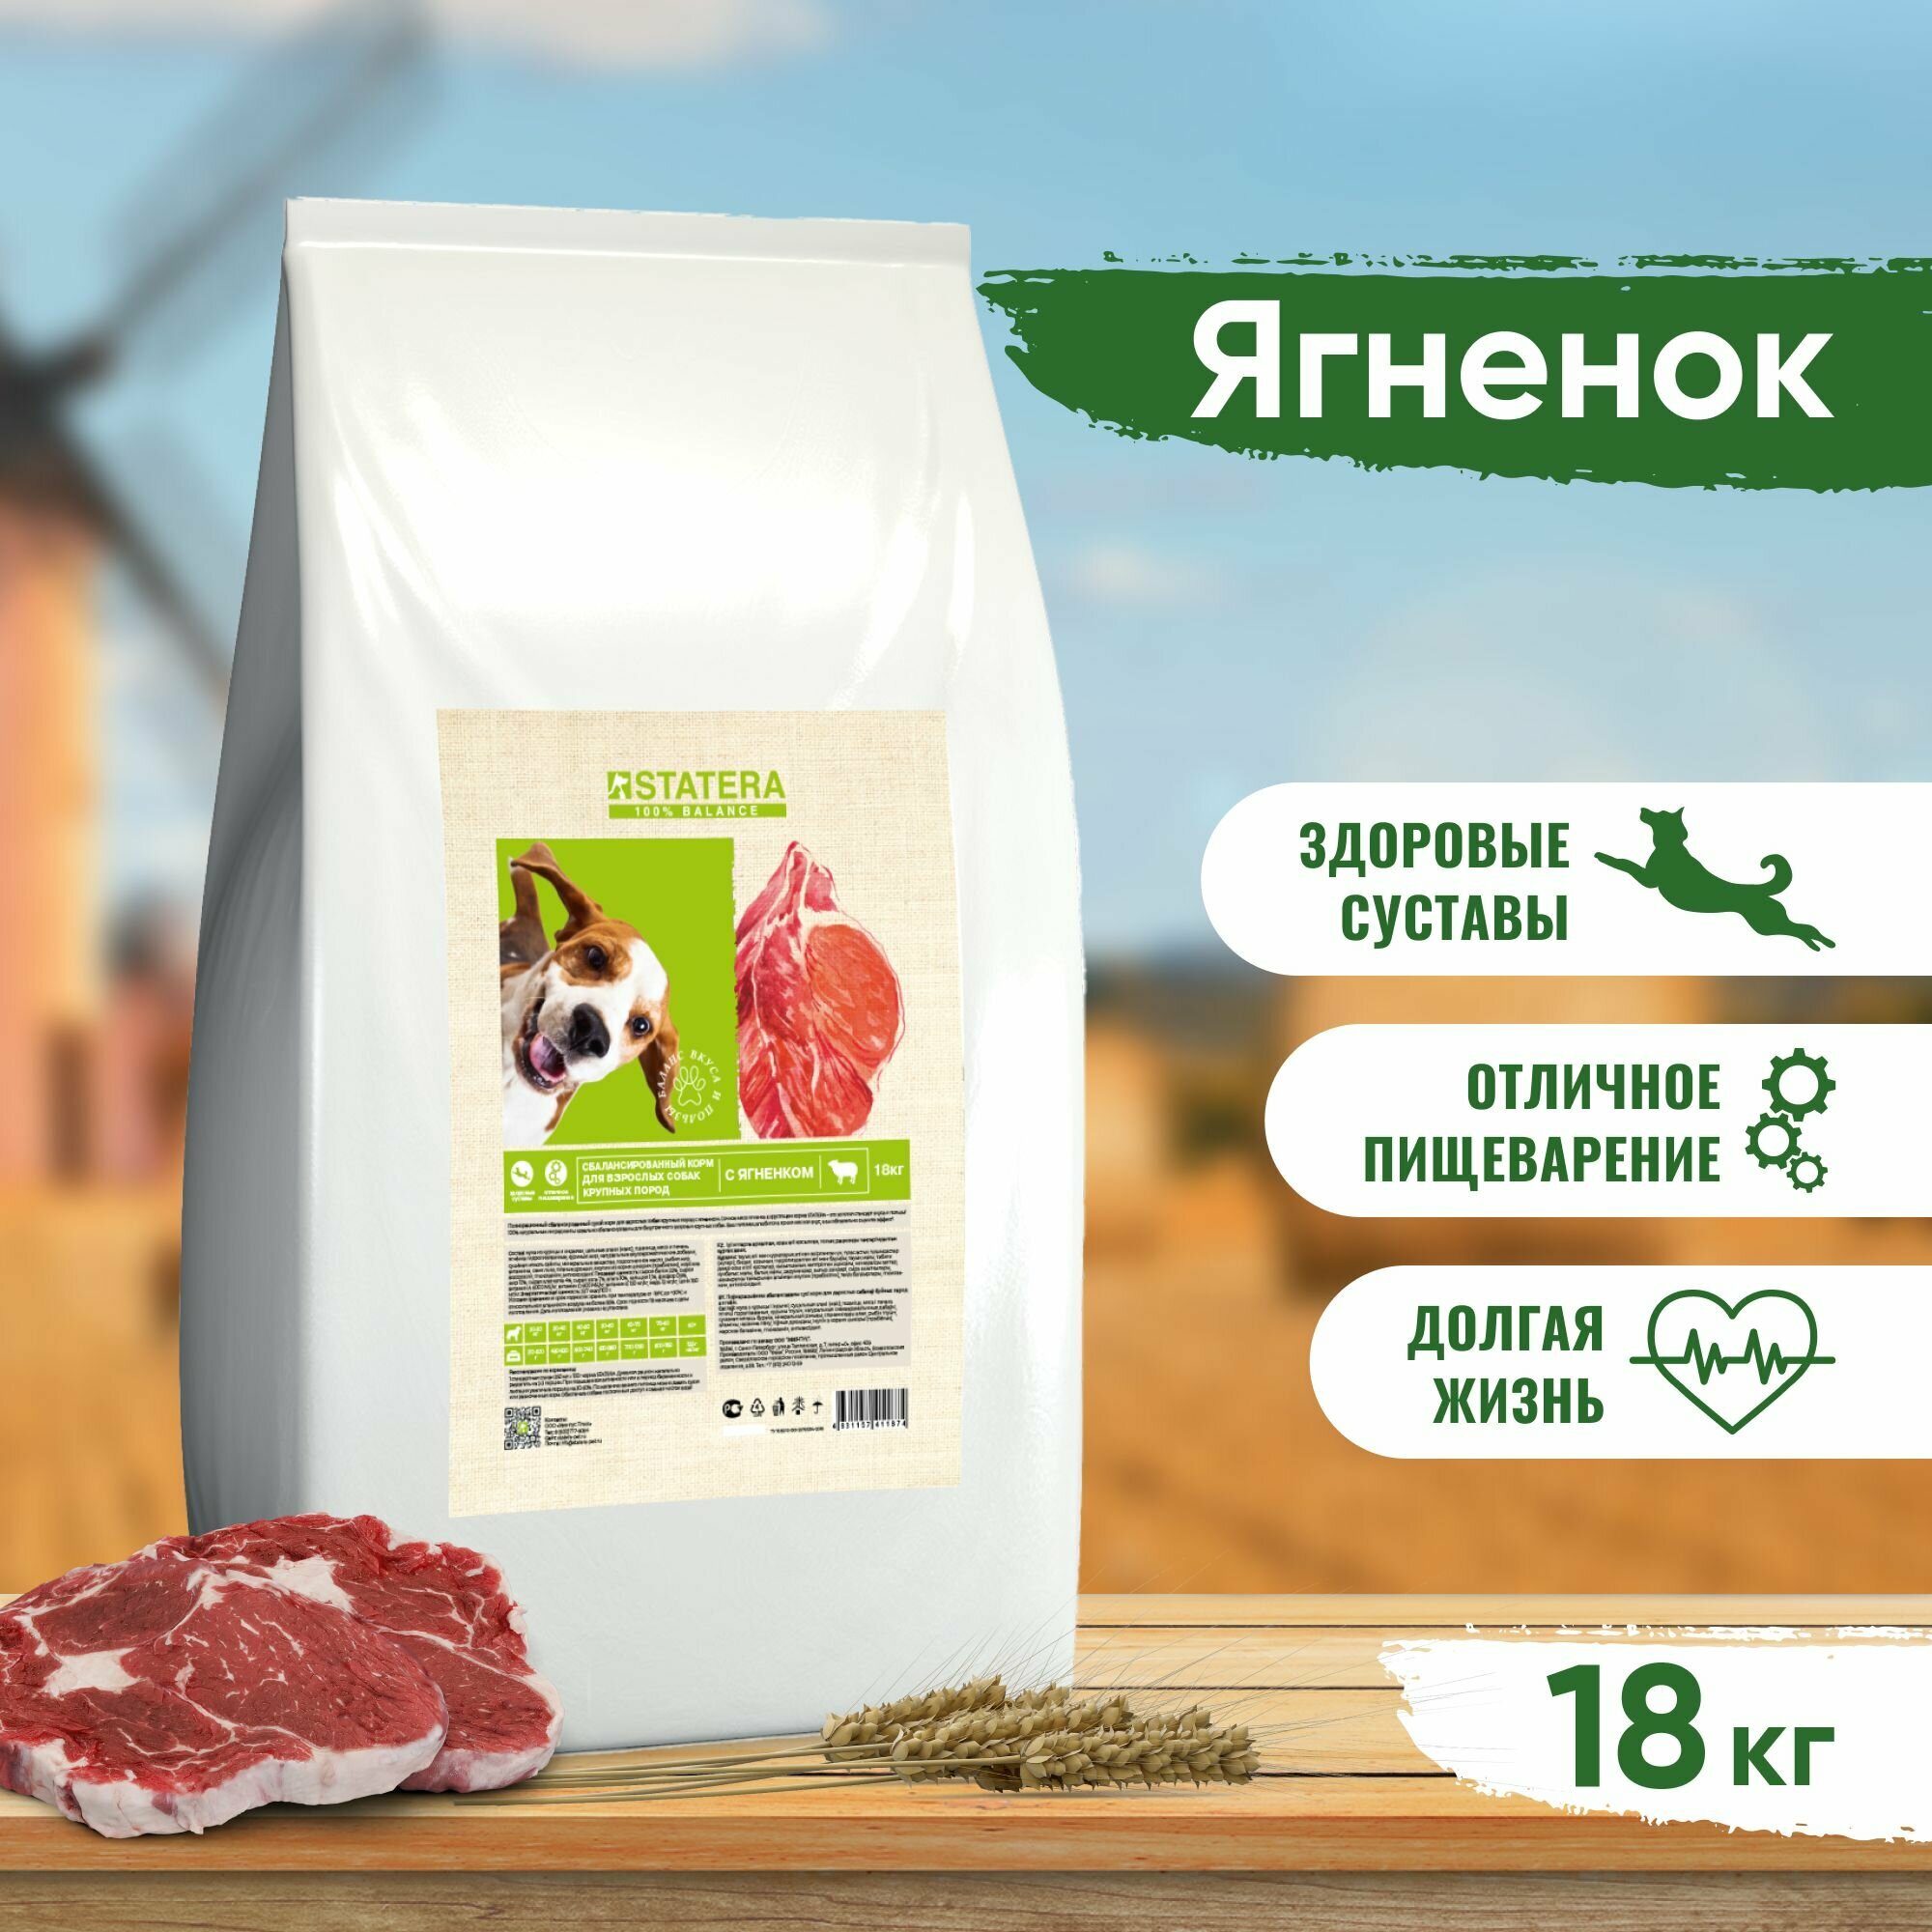 Statera - Сухой корм для взрослых собак крупных пород, с Ягненком mSTA005 18 кг